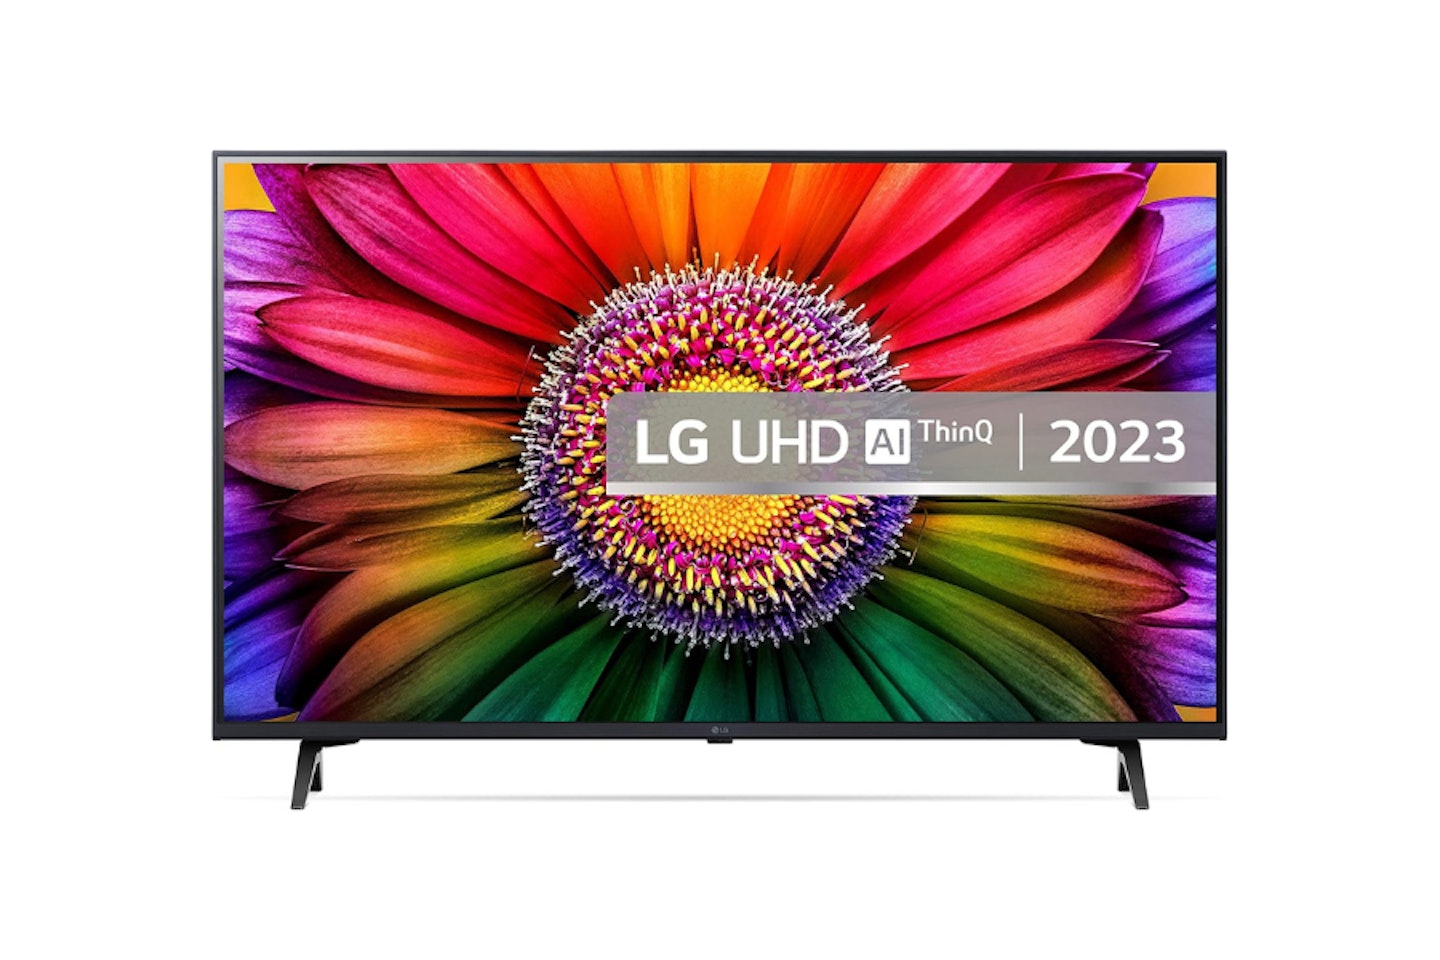 LG LED UR80 43" 4K Smart TV, 2023